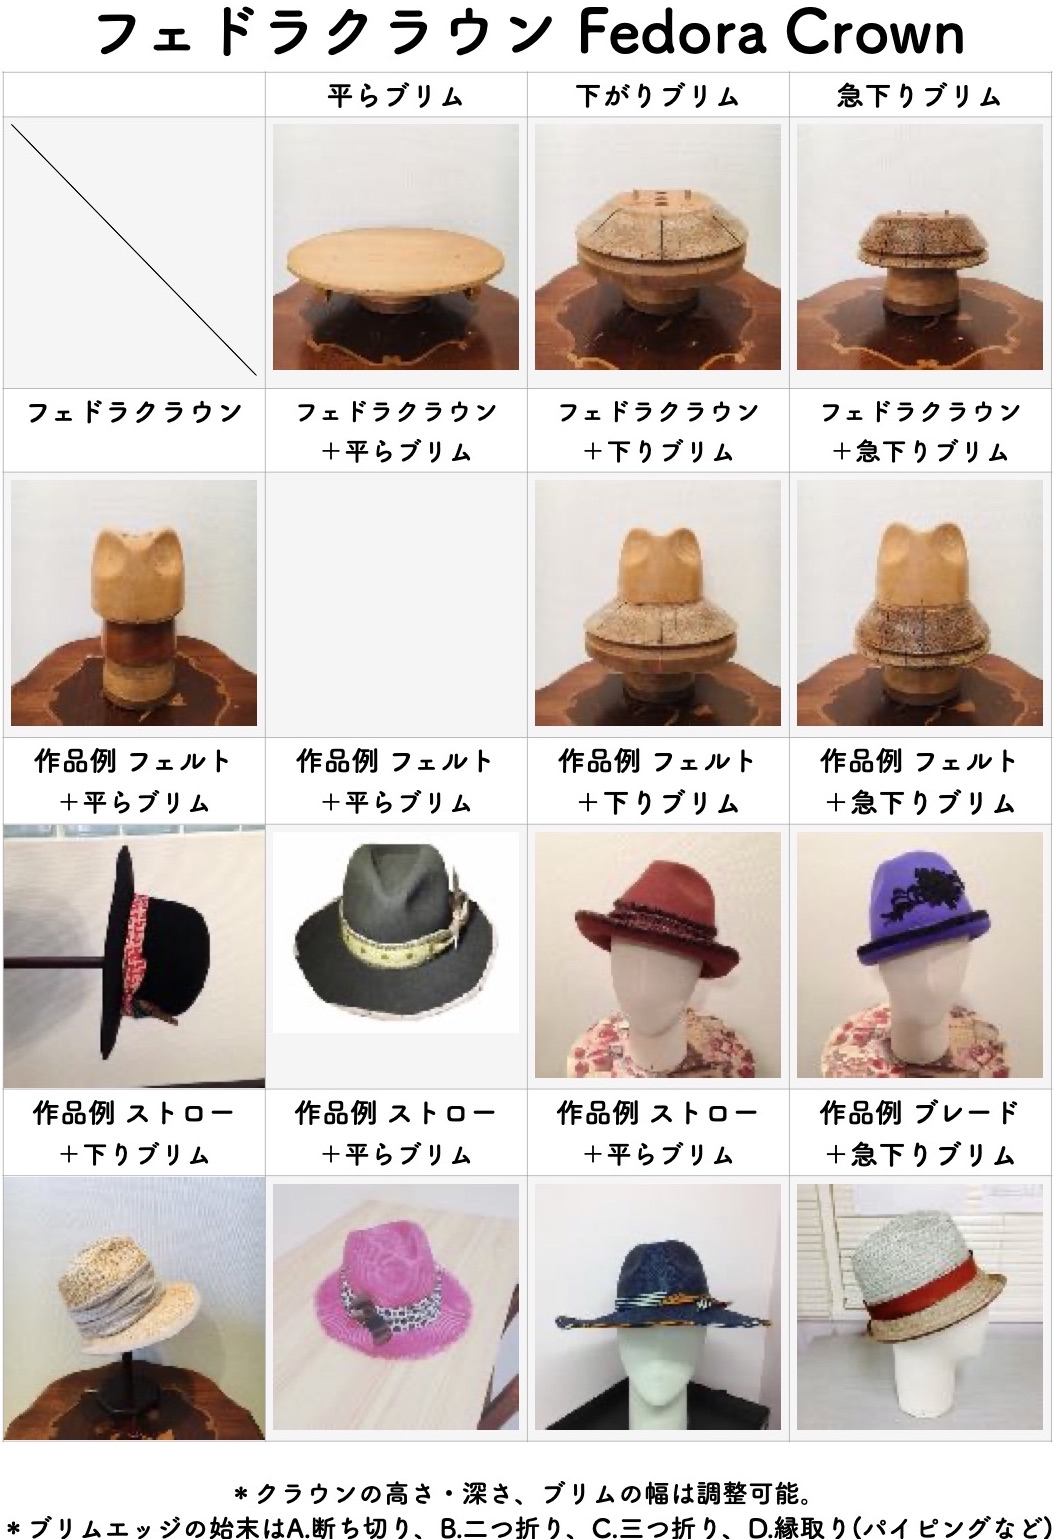 帽子教室で製作できる 帽体帽子・型物帽子 の『 木型の種類と作品例 